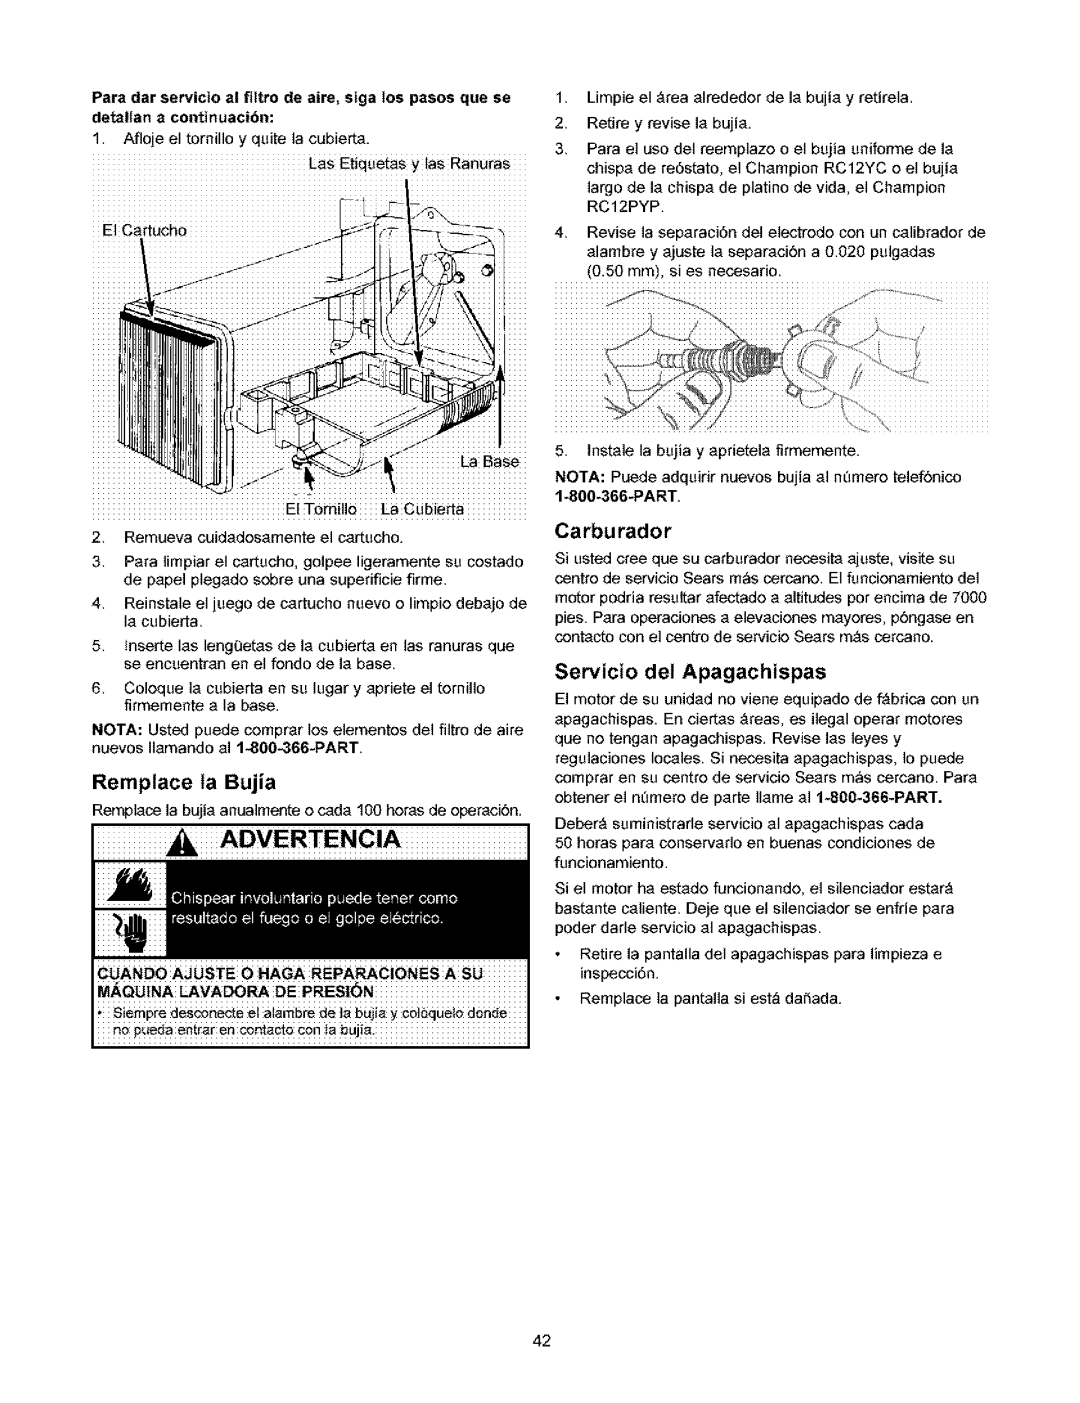 Craftsman 580.753 manual Remptace ta Bujia, Carburador, Servicio del Apagachispas, detallan a continuacibn, Part 